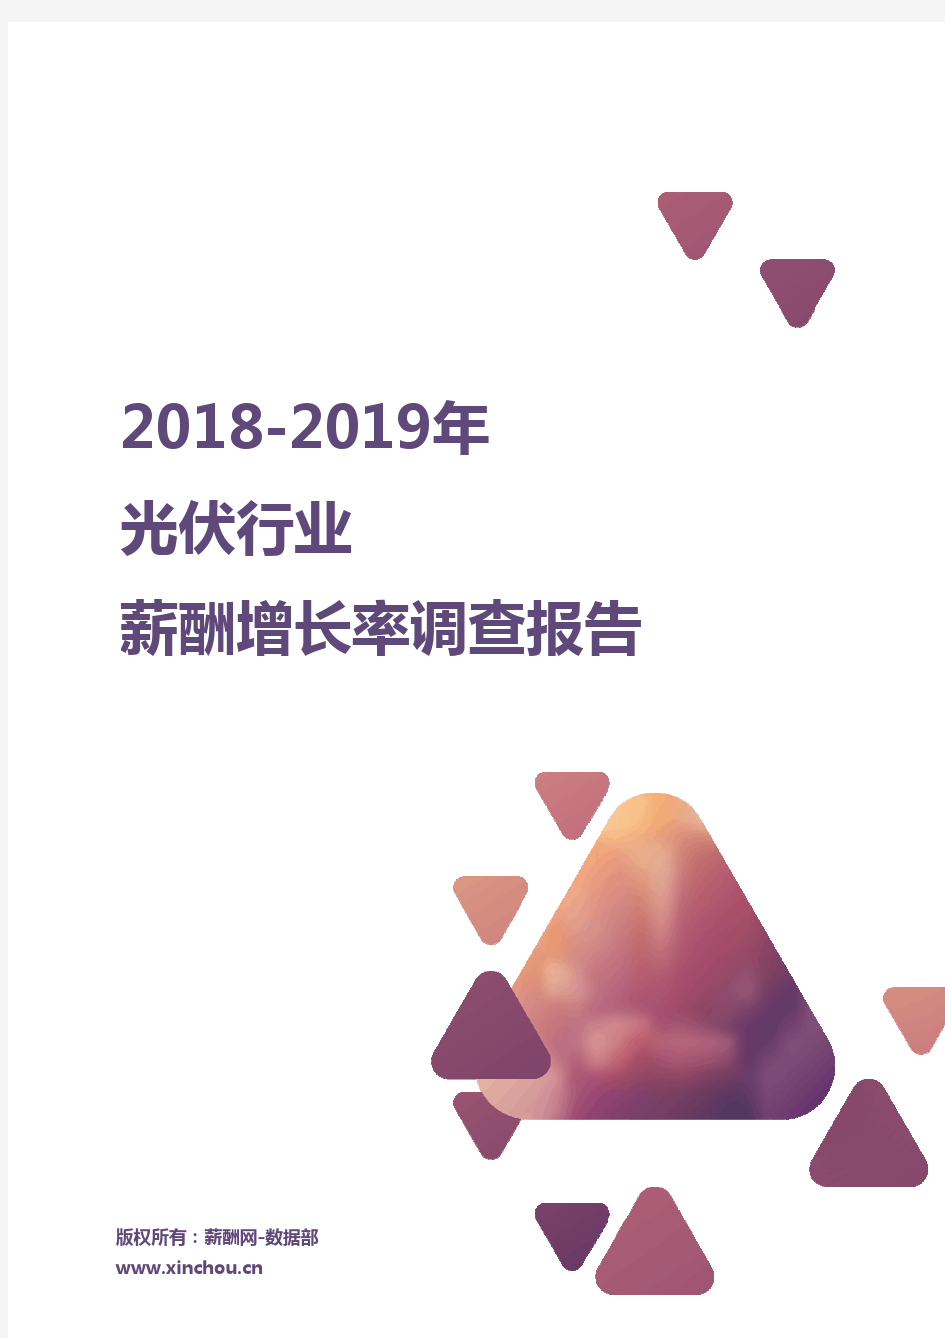 2018-2019光伏行业薪酬增长率报告